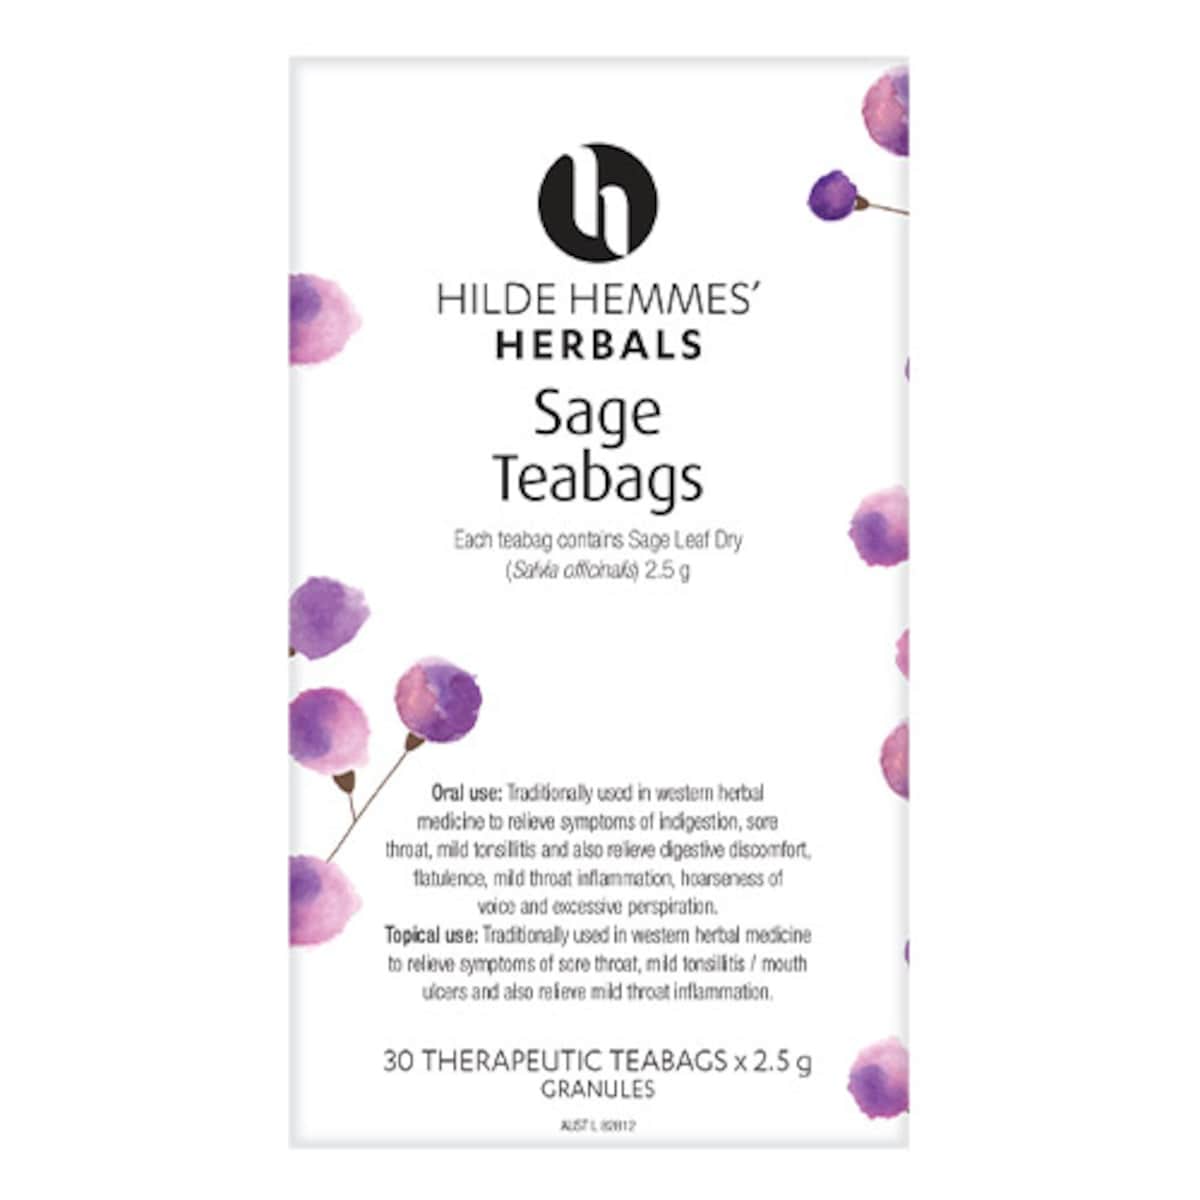 Hilde Hemmes Herbals Sage 30 Tea Bags Australia